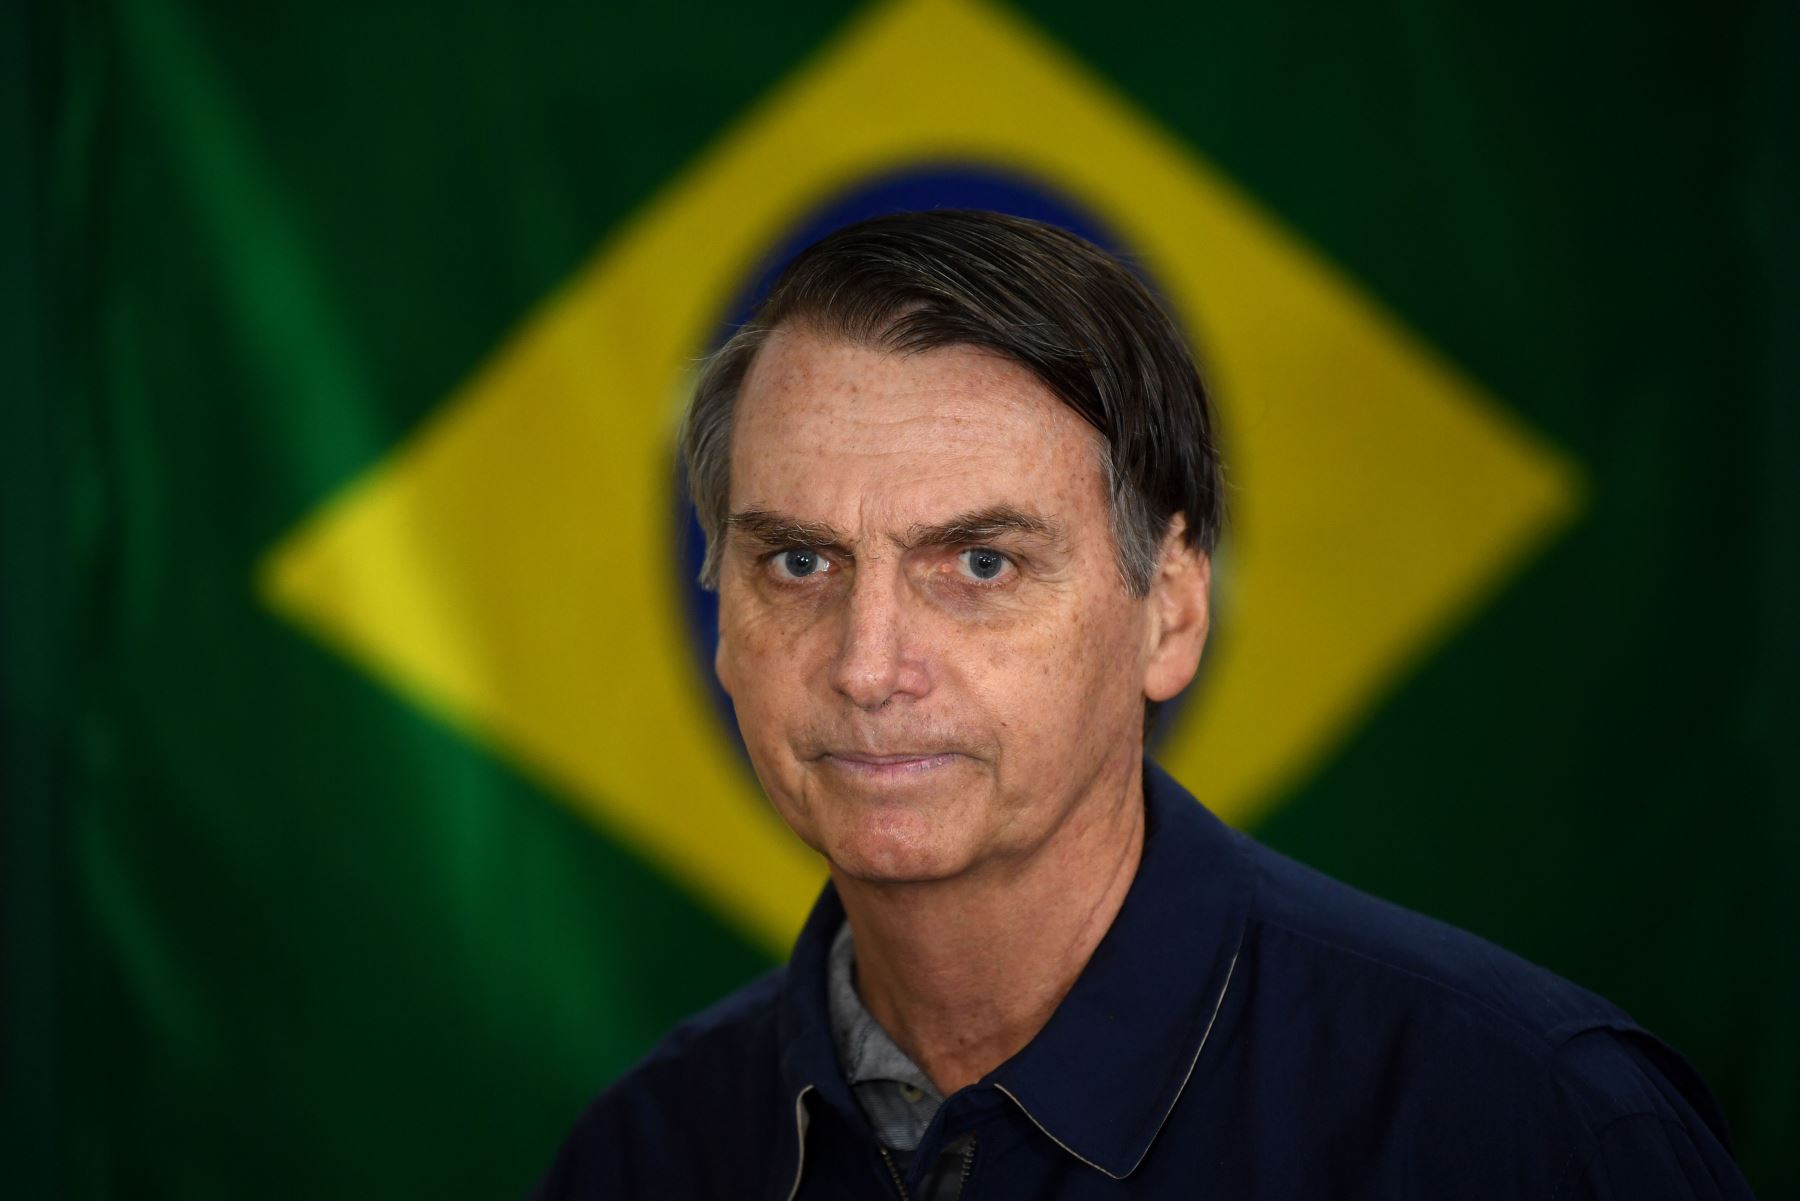 Bolsonaro es criticado dentro y fuera de Brasil por defender la apertura de la Amazonía a la explotación minera, energética y agropecuaria. Foto: AFP